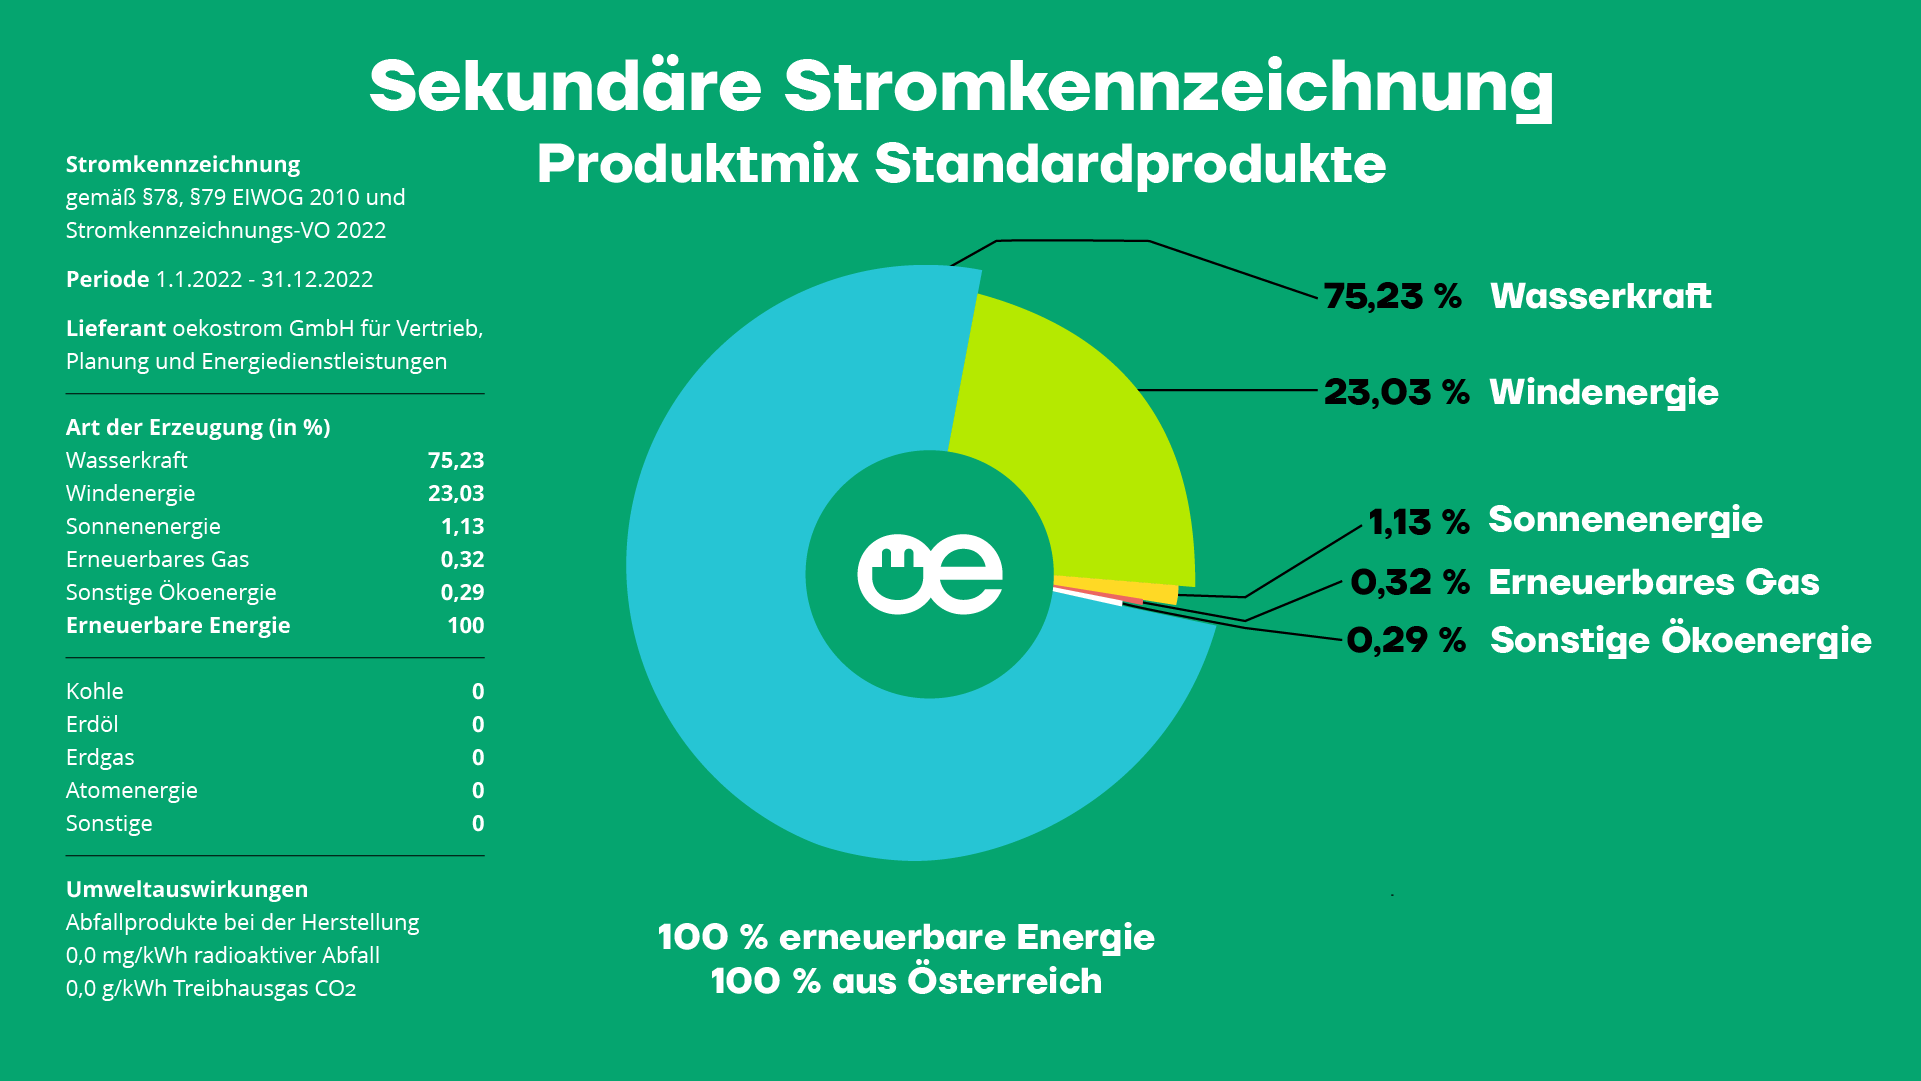 Sekundäre Stromkennzeichnung der oekostrom AG Produktmix Standardprodukte 2022